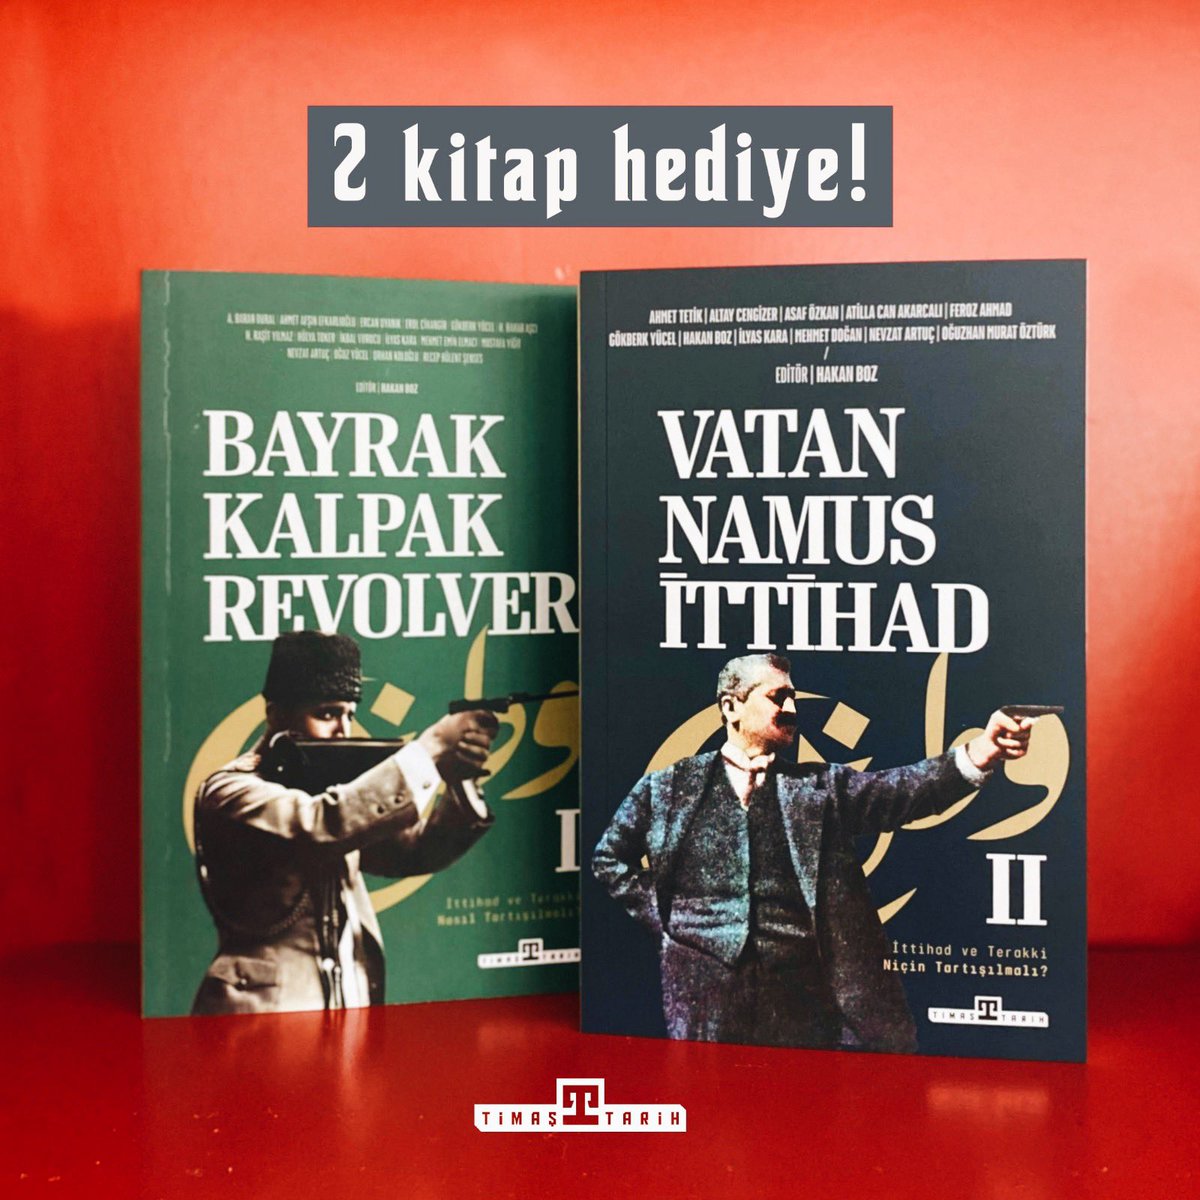 2 okurumuza @HakanBoz0 editörlüğünde hazırlanan ‘Bayrak Kalpak Revolver’ ve ‘Vatan Namus İttihad’ kitaplarını hediye ediyoruz! 

📌 Bu tweeti RT’leyip @timastarih sayfasını takibe almanız yeterli 🙂